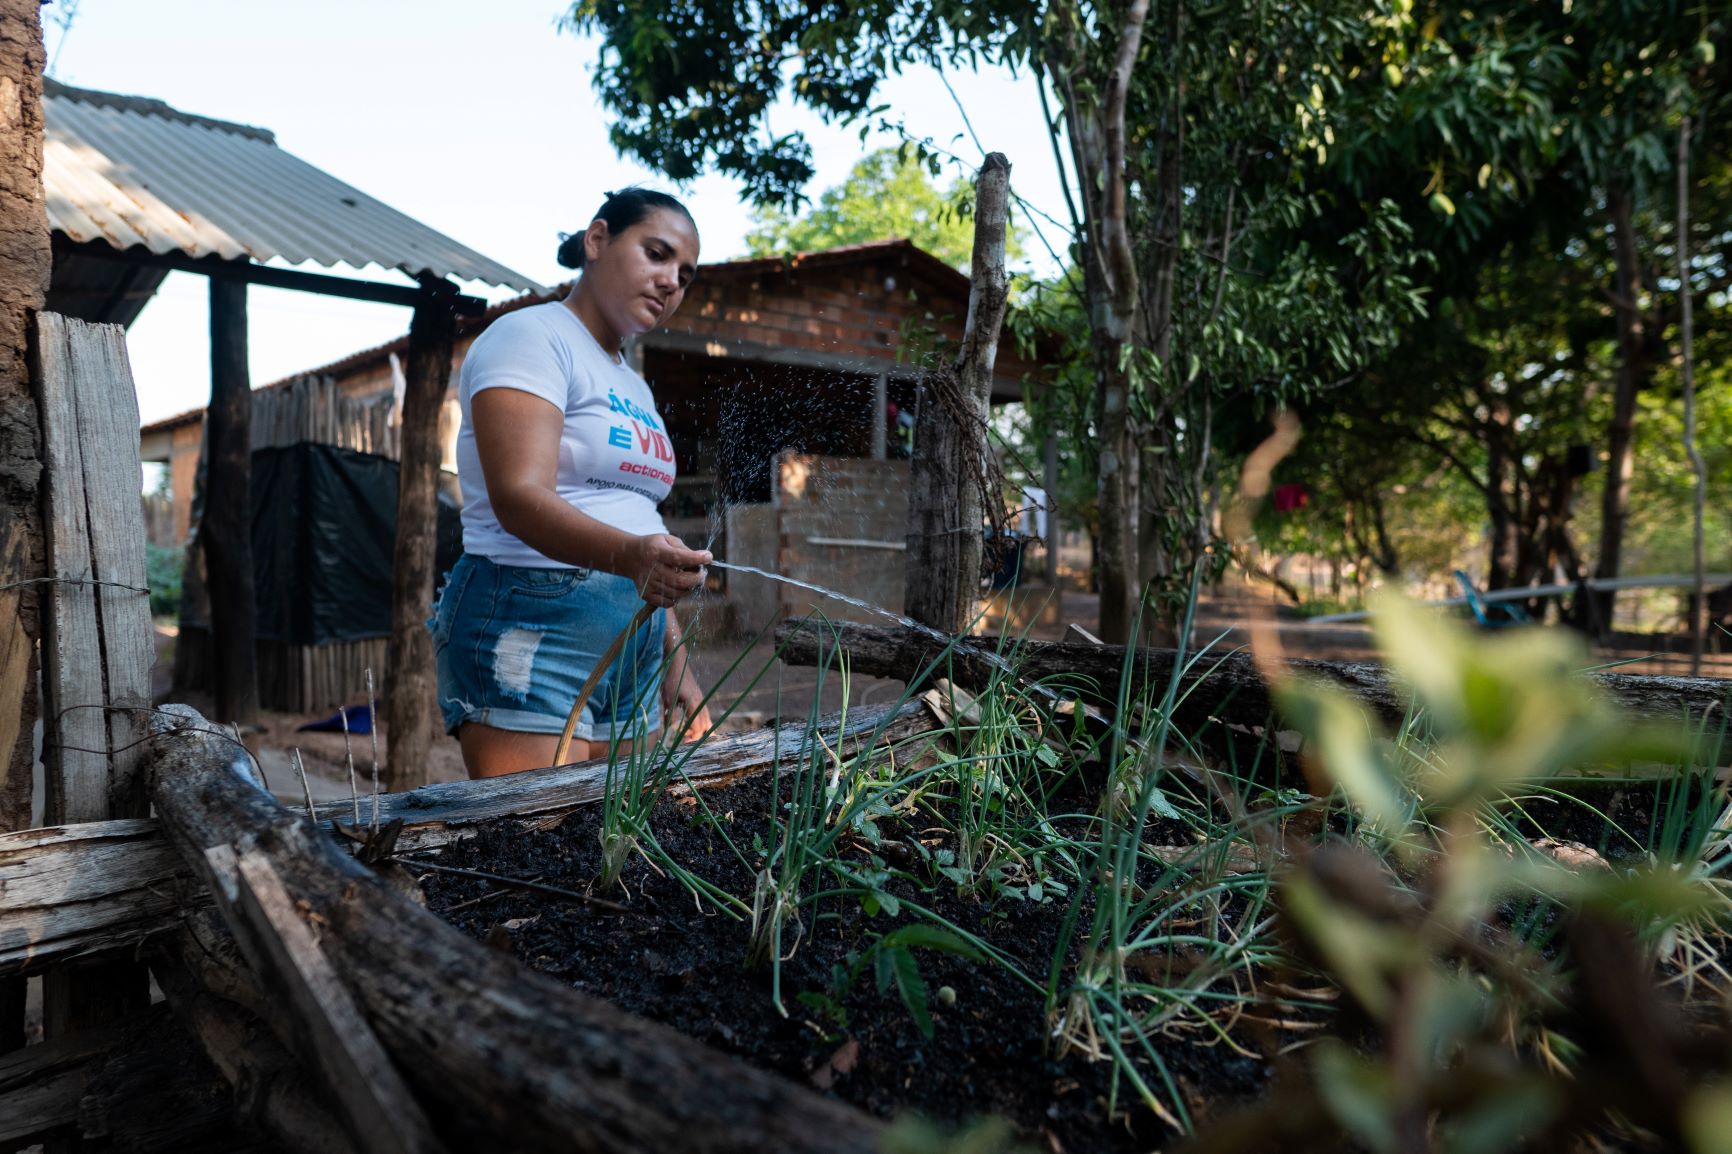 Agricultora apoiada pelo Fundo Áagua rega horta no Maranhão: dados mostram que Onde há menor e pior acesso à água, há mais fome (Foto: Ingrid Barros / Divulgação / ActionAid)